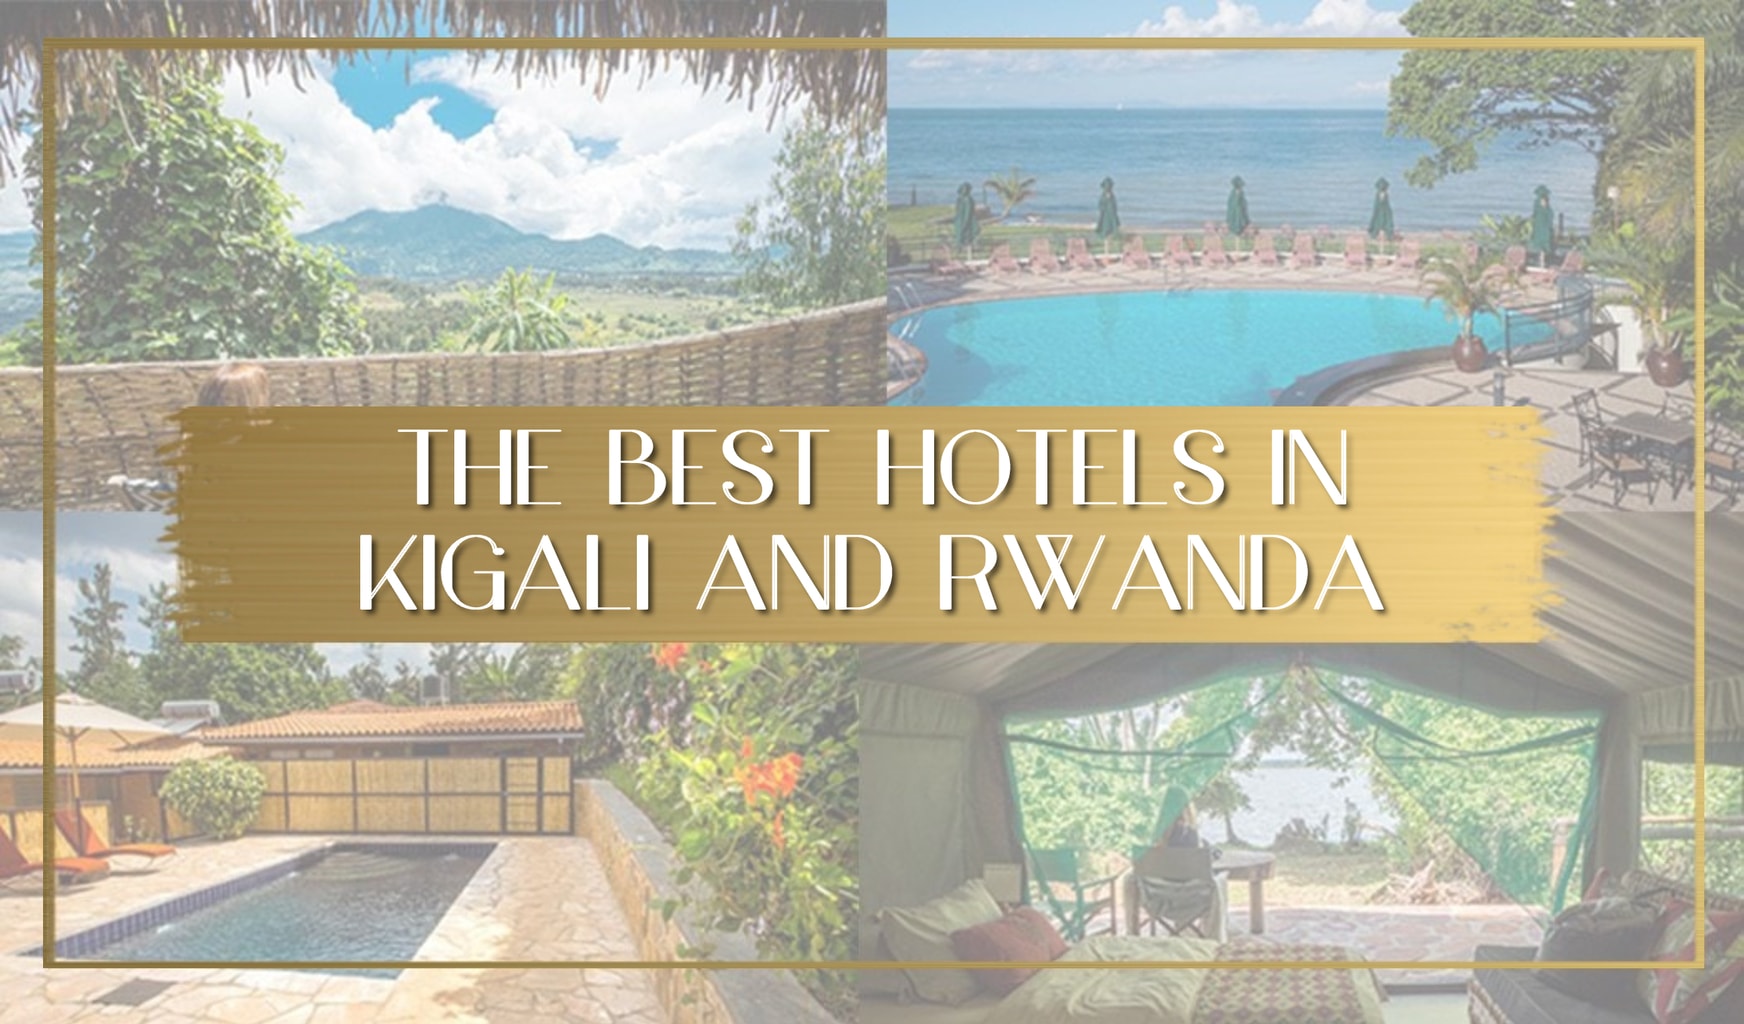 The best hotels in Kigali and Rwanda main